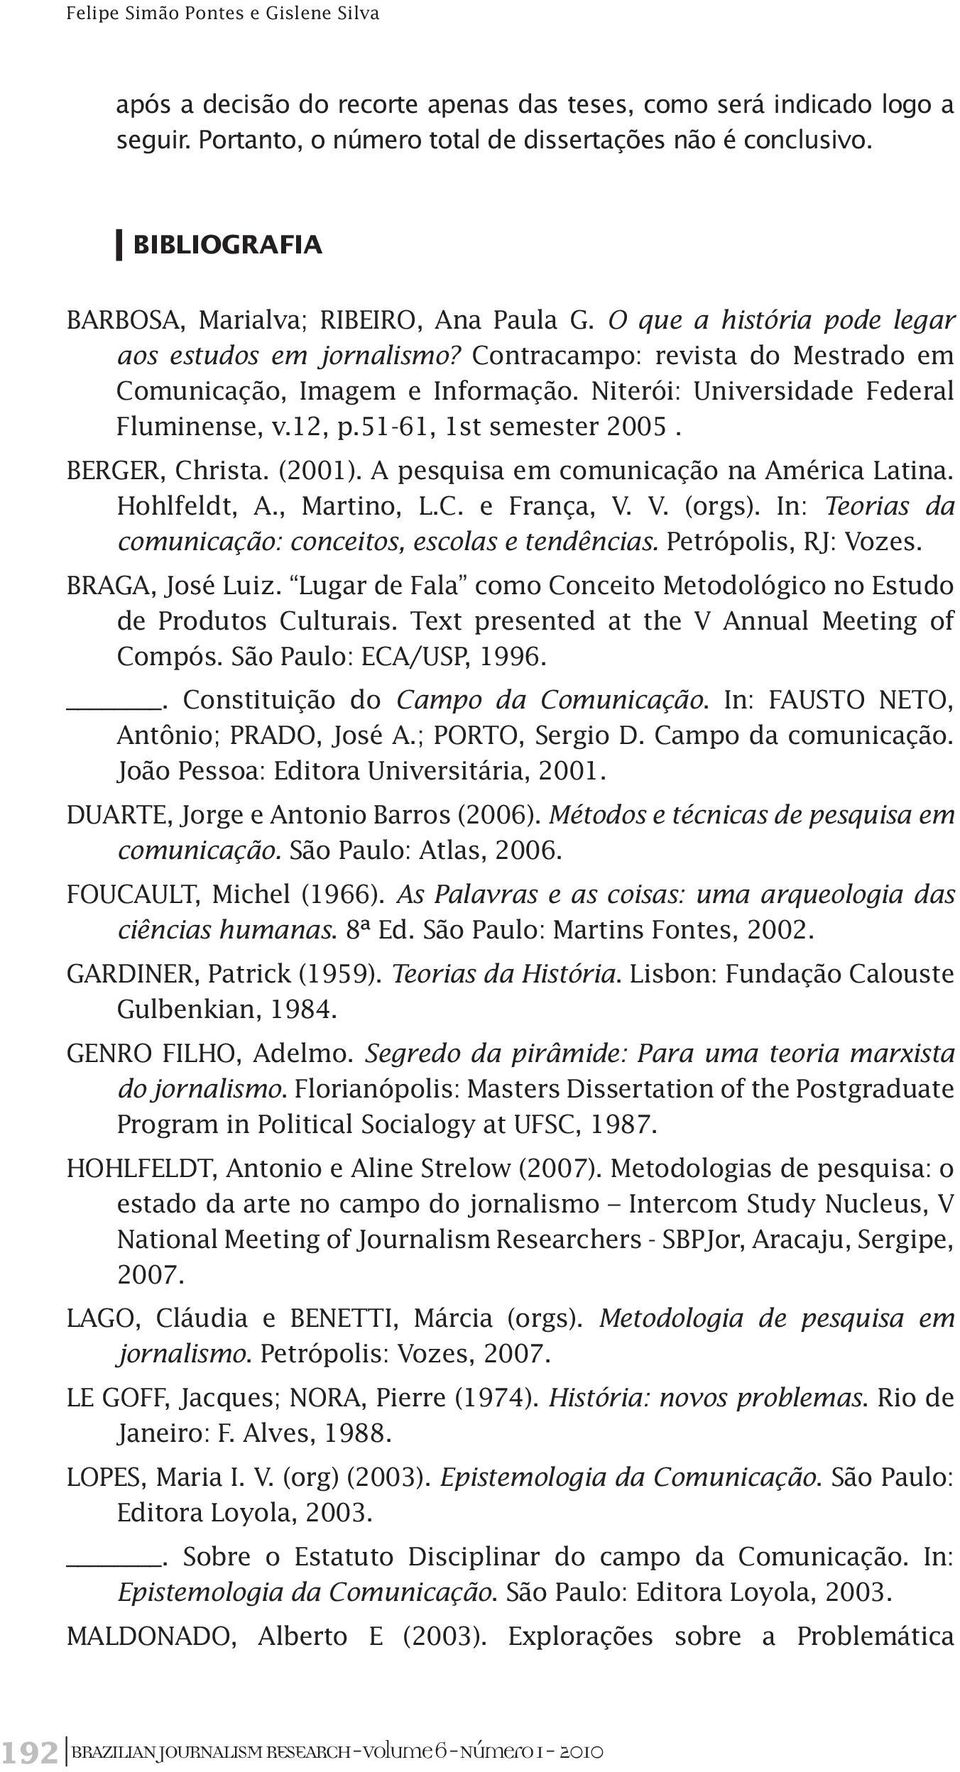 Niterói: Universidade Federal Fluminense, v.12, p.51-61, 1st semester 2005. BERGER, Christa. (2001). A pesquisa em comunicação na América Latina. Hohlfeldt, A., Martino, L.C. e França, V. V. (orgs).